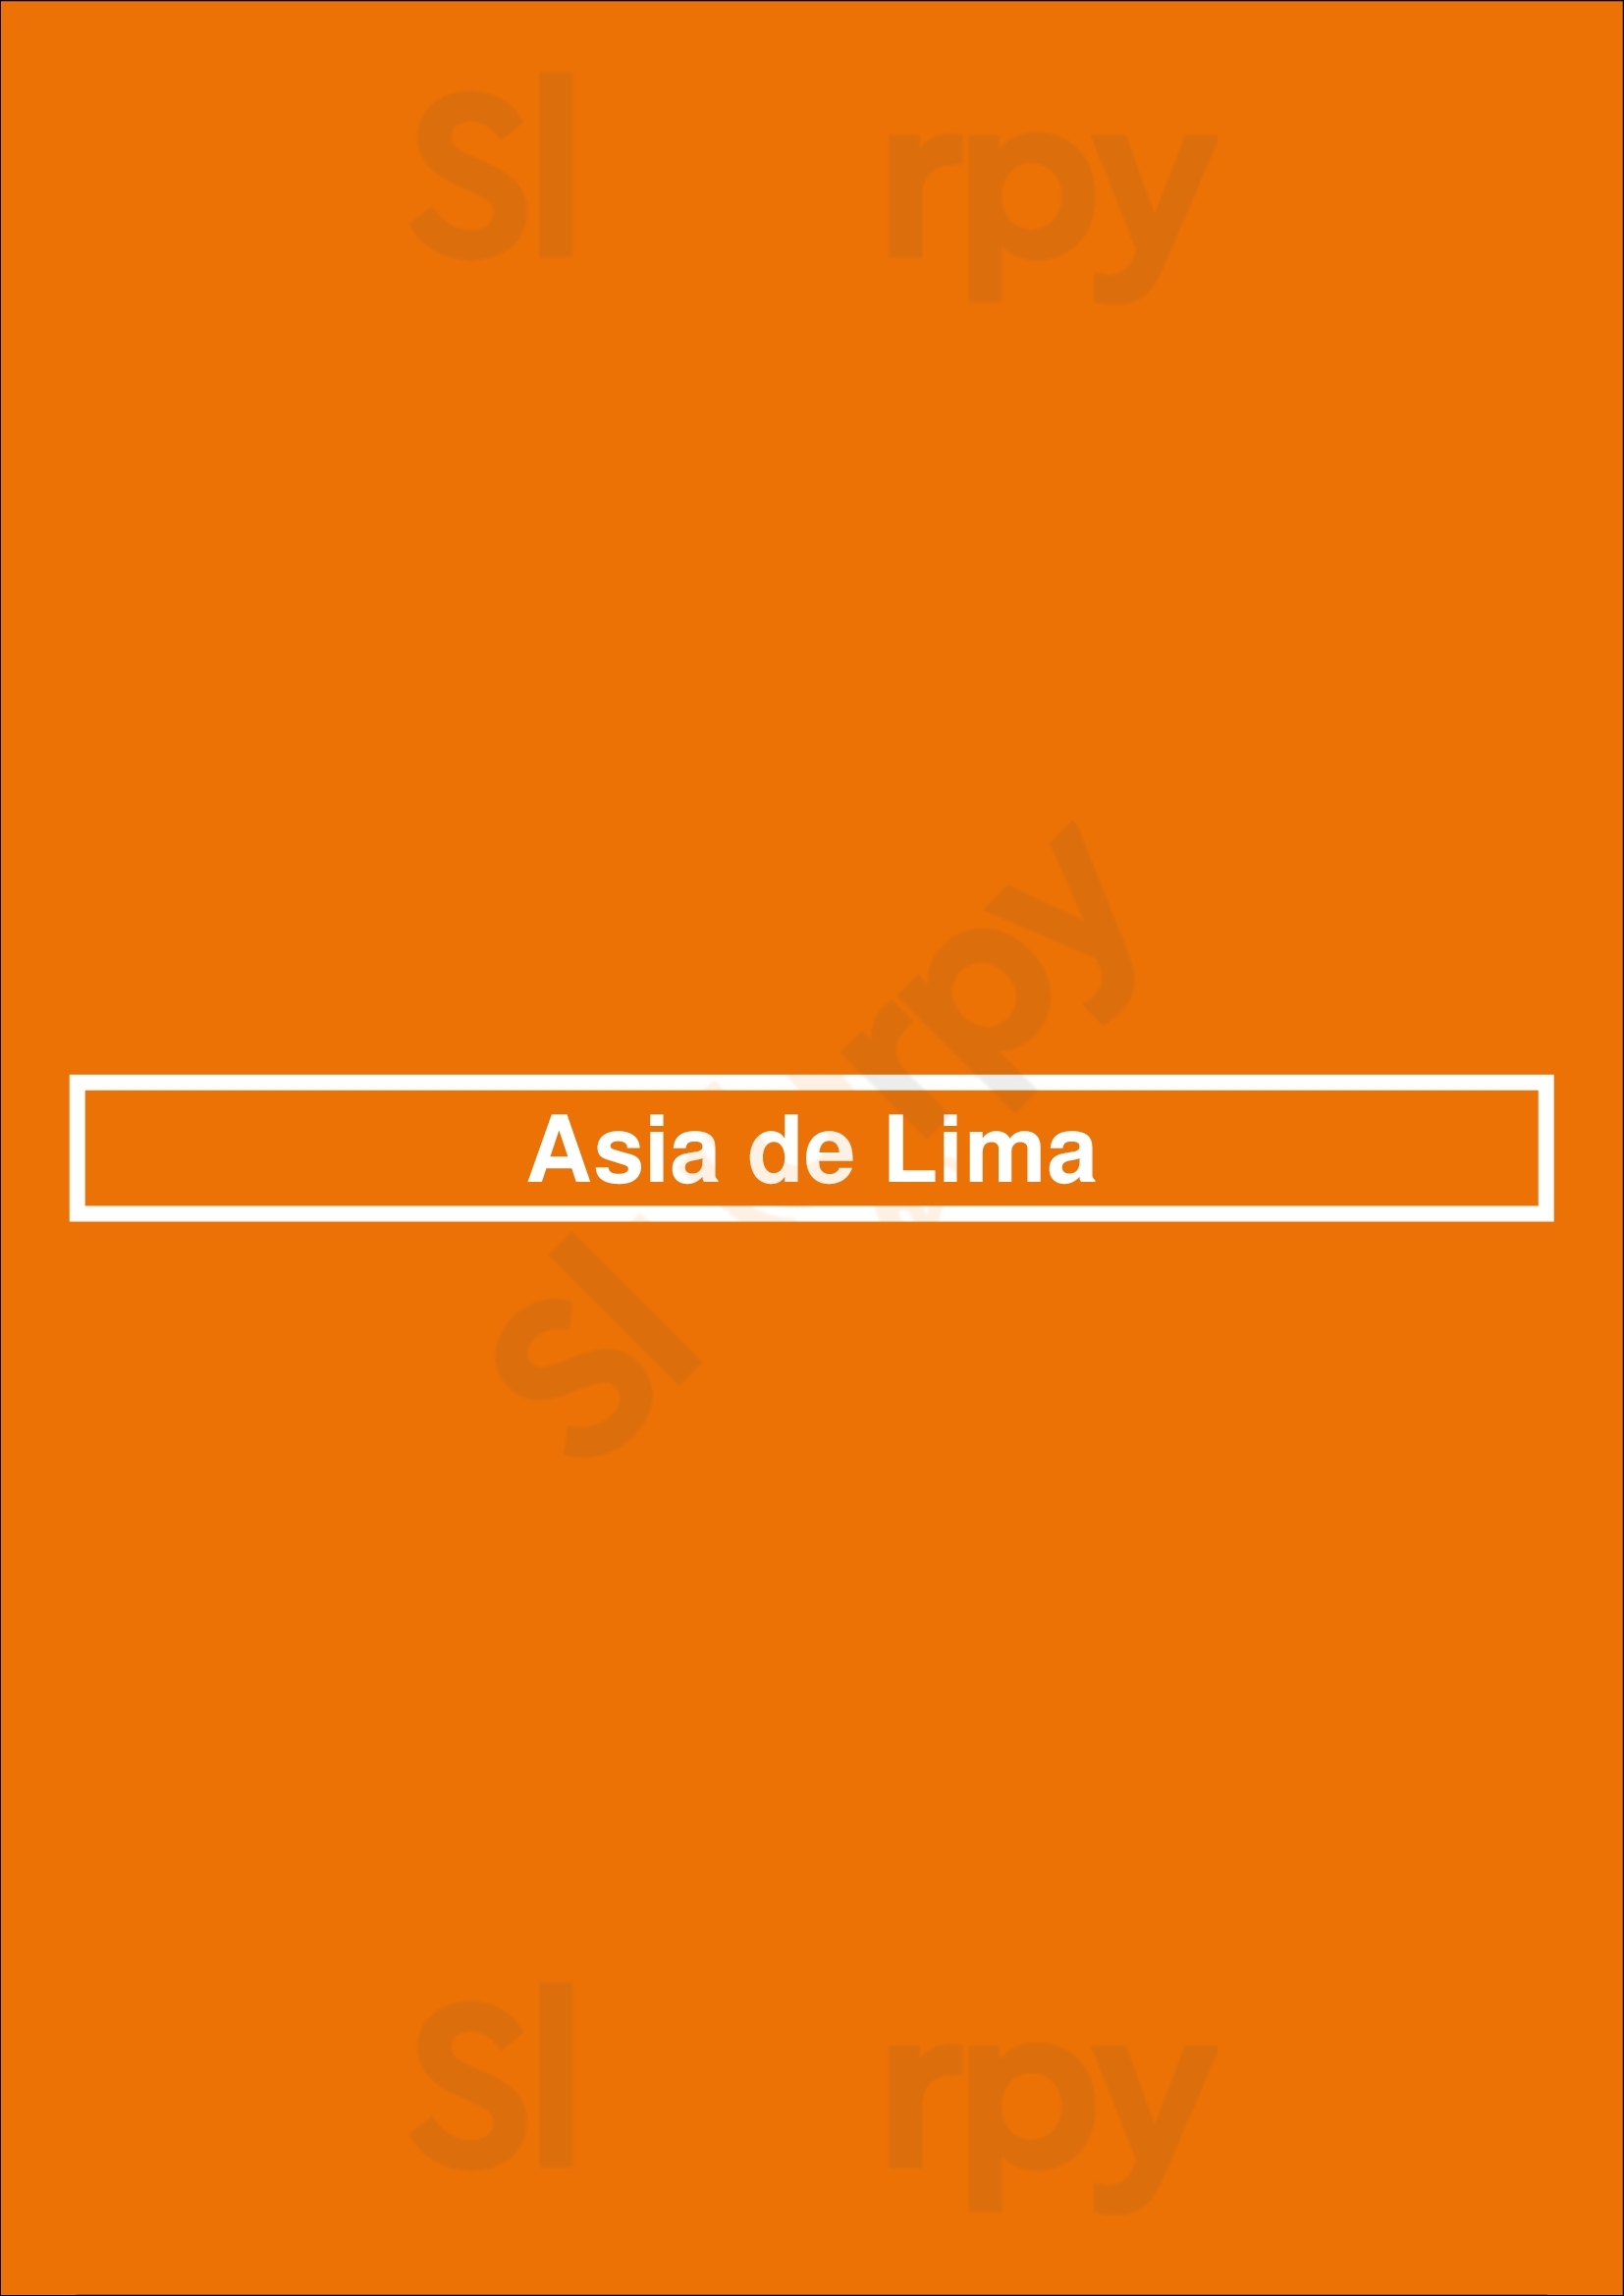 Asia De Lima Santurce Menu - 1